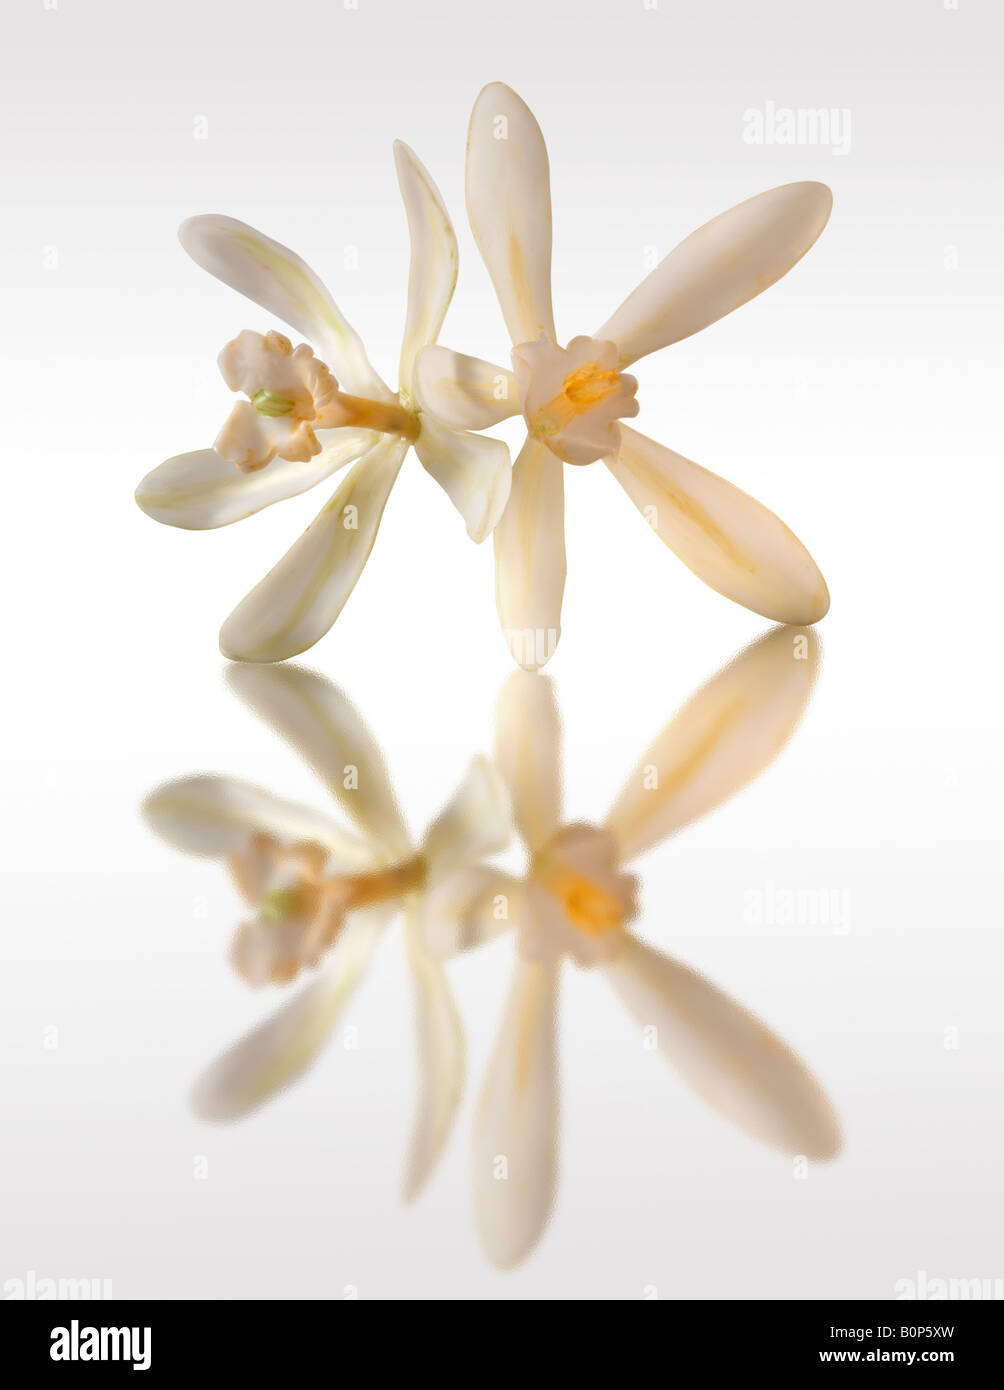 fiore bianco alla vaniglia , planifolia di vaniglia, da vicino isolato su sfondo bianco, contro bianco Foto Stock